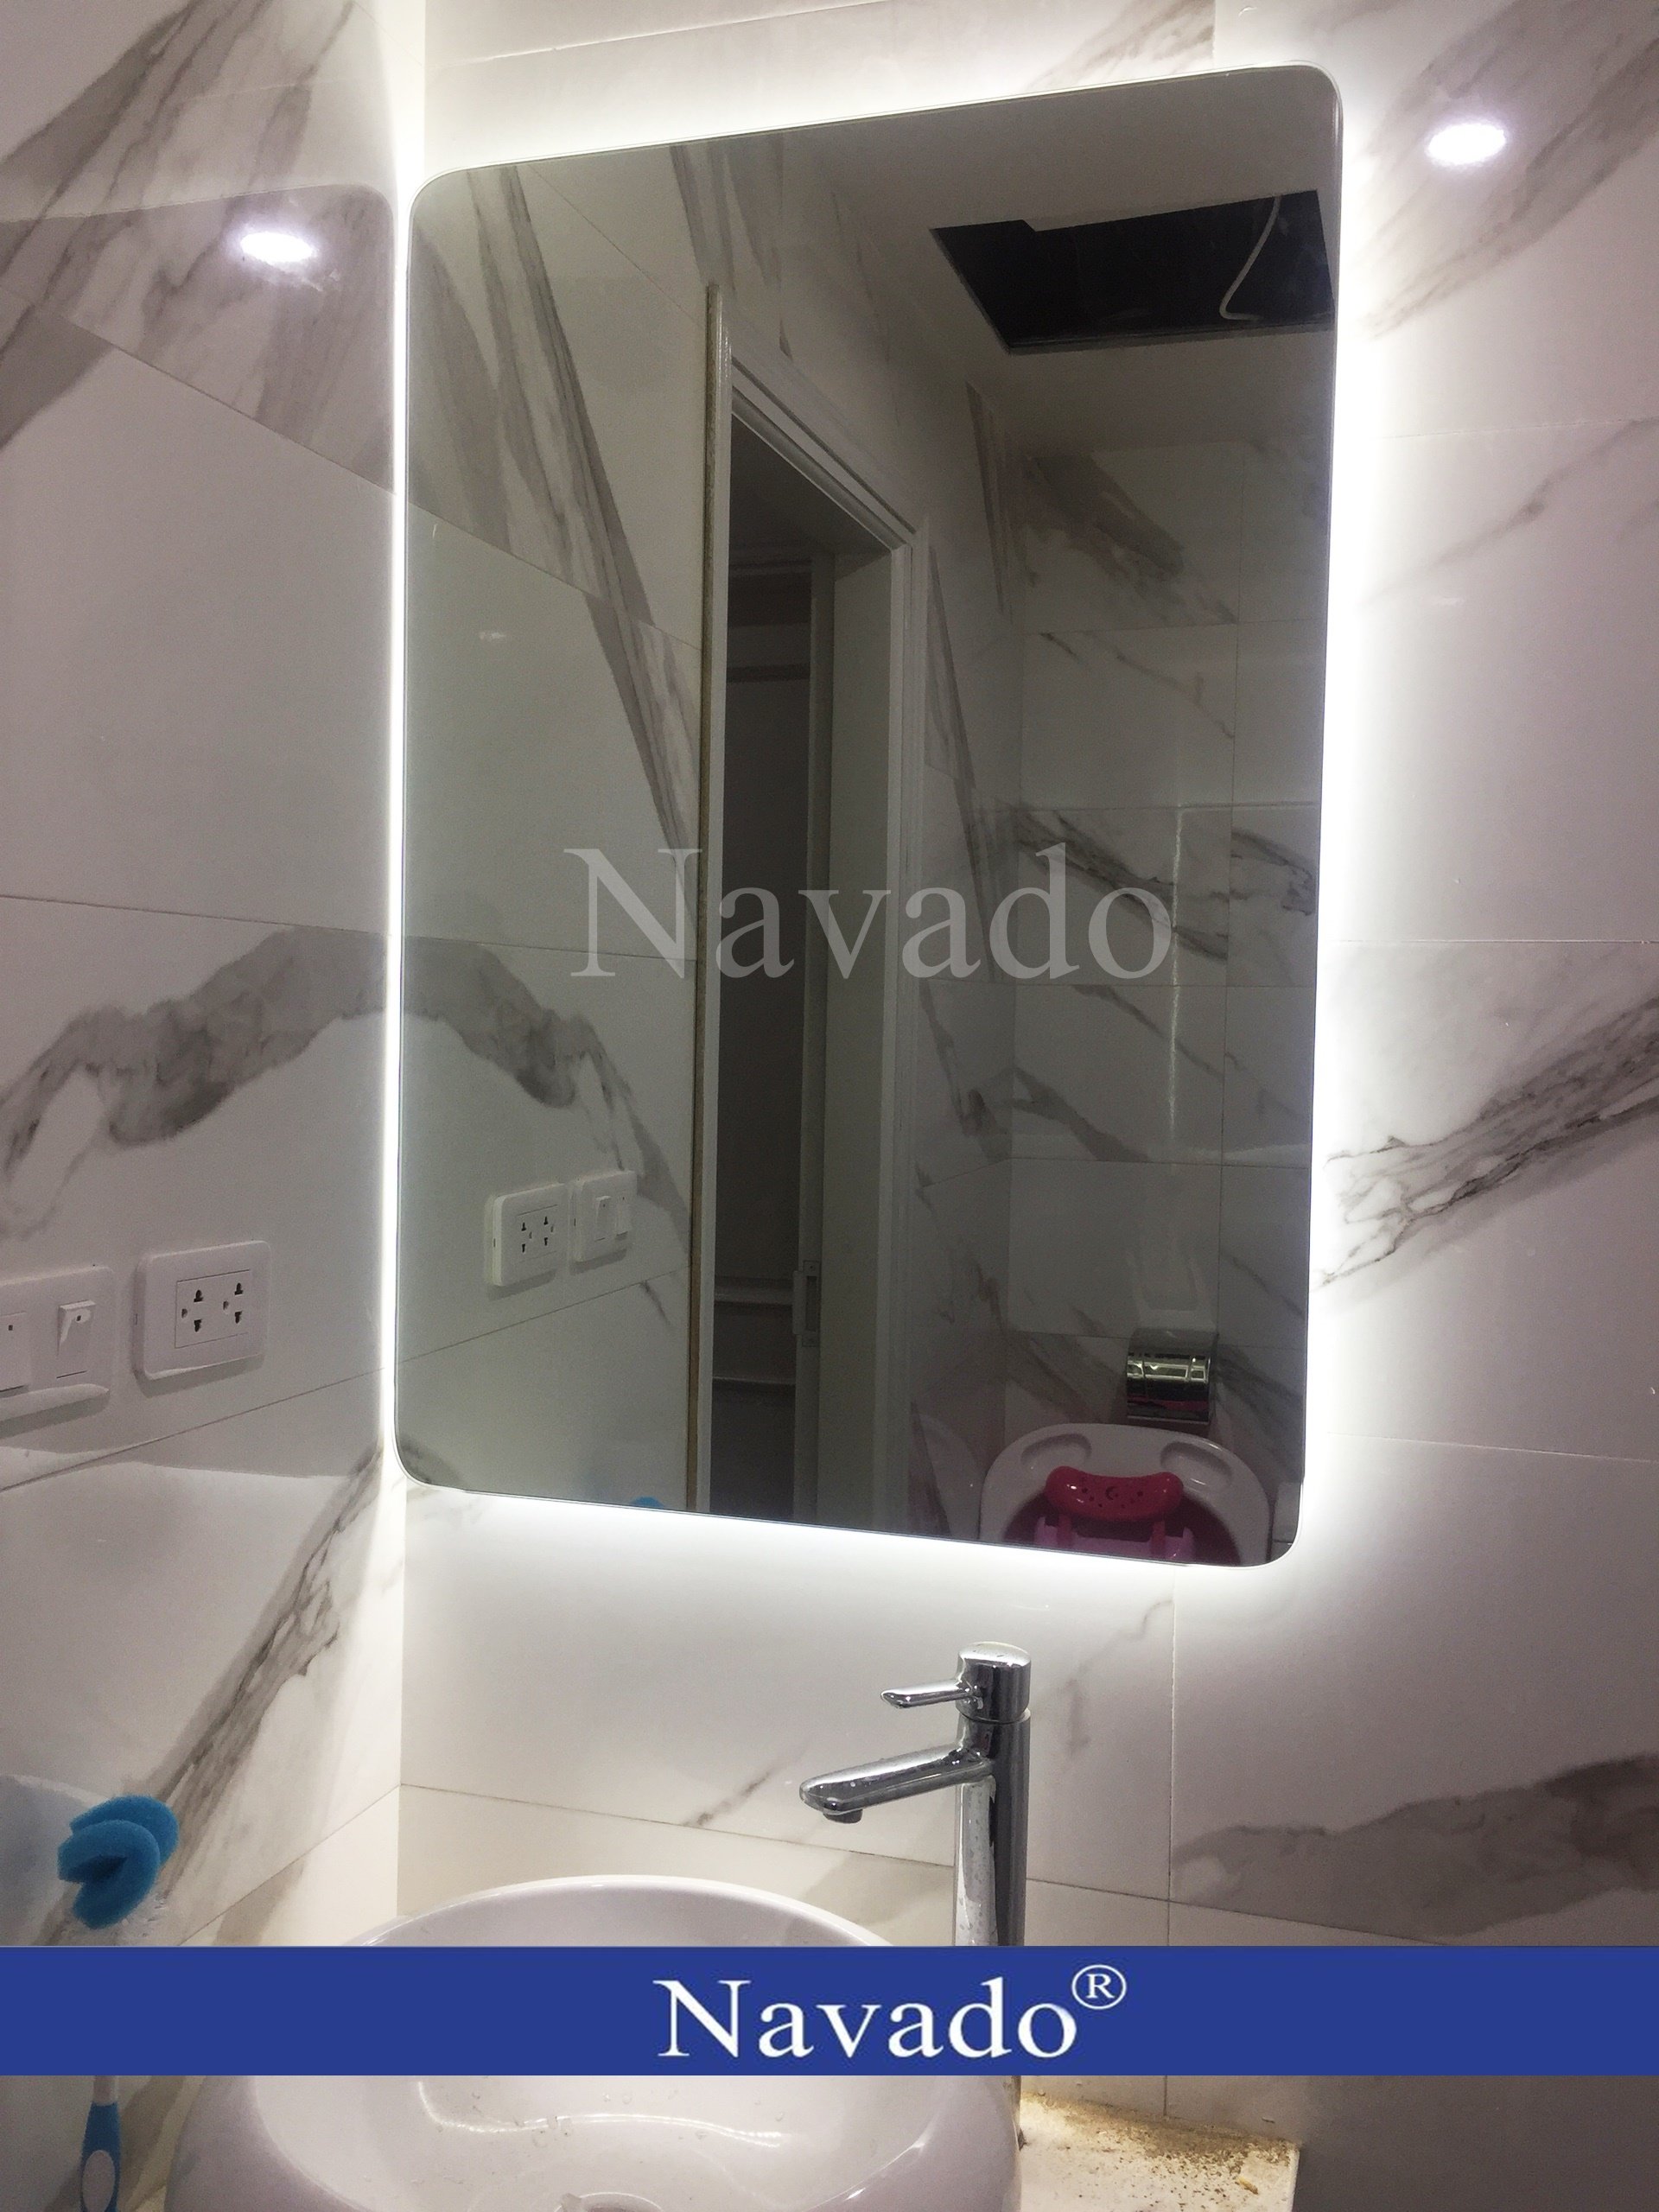 Tìm kiếm một mẫu gương trang trí tân cổ điển độc đáo cho phòng tắm Navado? Hãy tham khảo sản phẩm của Nguyệt Quế phòng tắm Navado. Với thiết kế sang trọng và chất liệu tốt, sản phẩm này sẽ mang đến không gian sang trọng và đặc biệt cho ngôi nhà của bạn. Đừng bỏ lỡ cơ hội trang trí phòng tắm đẹp mắt và tinh tế này.